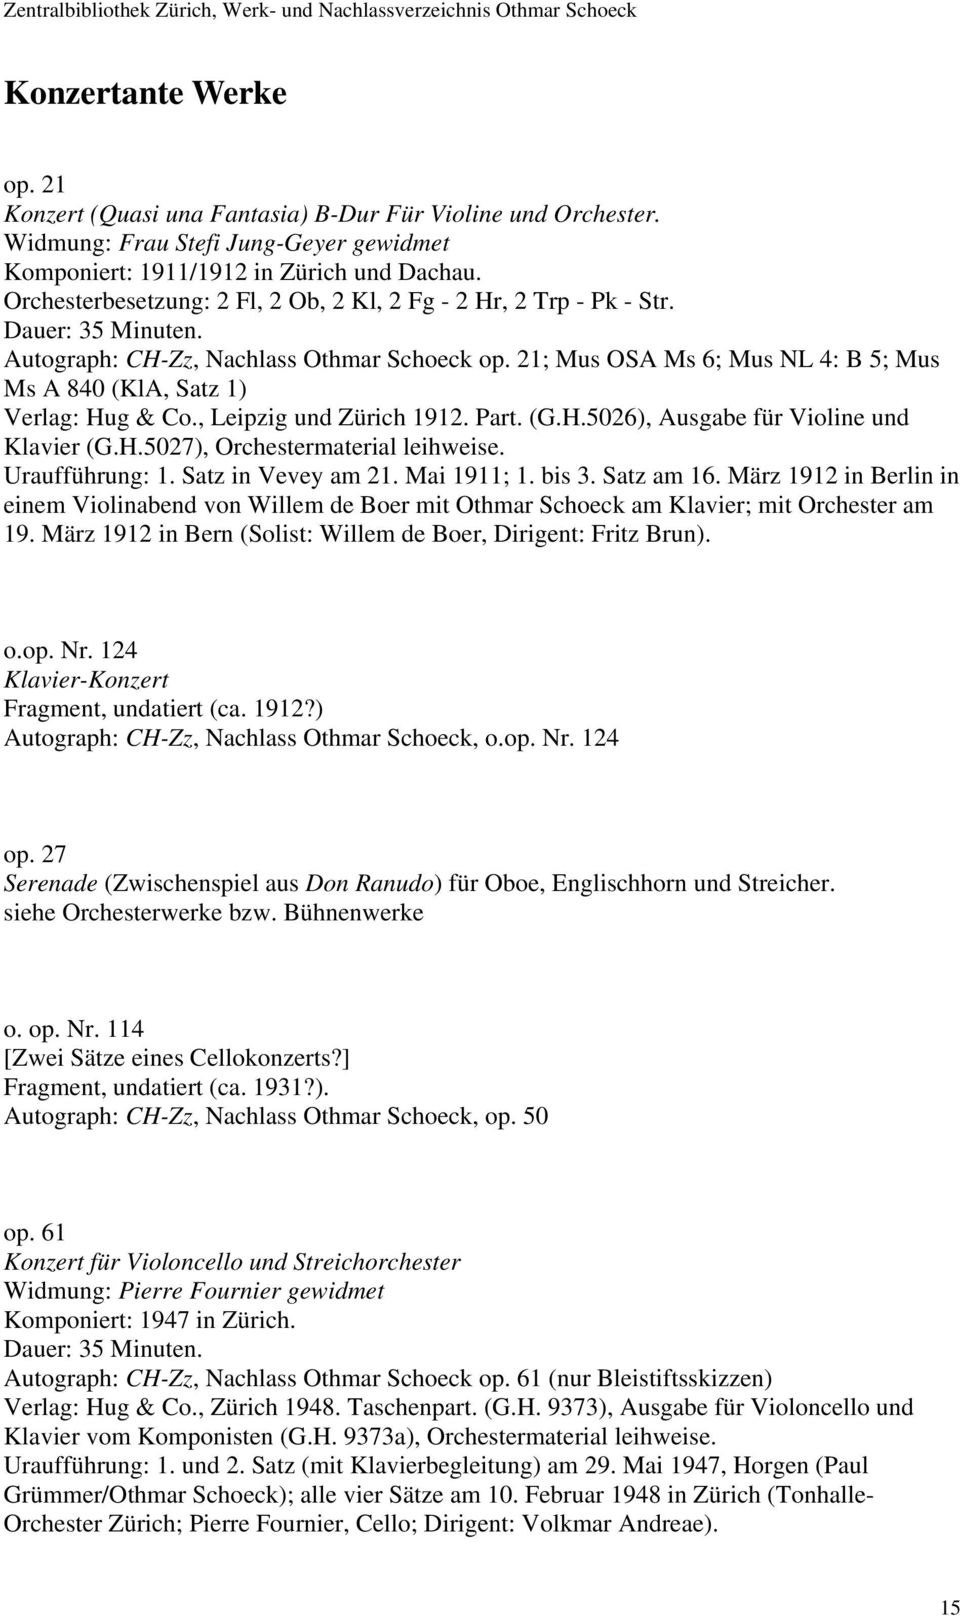 21; Mus OSA Ms 6; Mus NL 4: B 5; Mus Ms A 840 (KlA, Satz 1) Verlag: Hug & Co., Leipzig und Zürich 1912. Part. (G.H.5026), Ausgabe für Violine und Klavier (G.H.5027), Orchestermaterial leihweise.